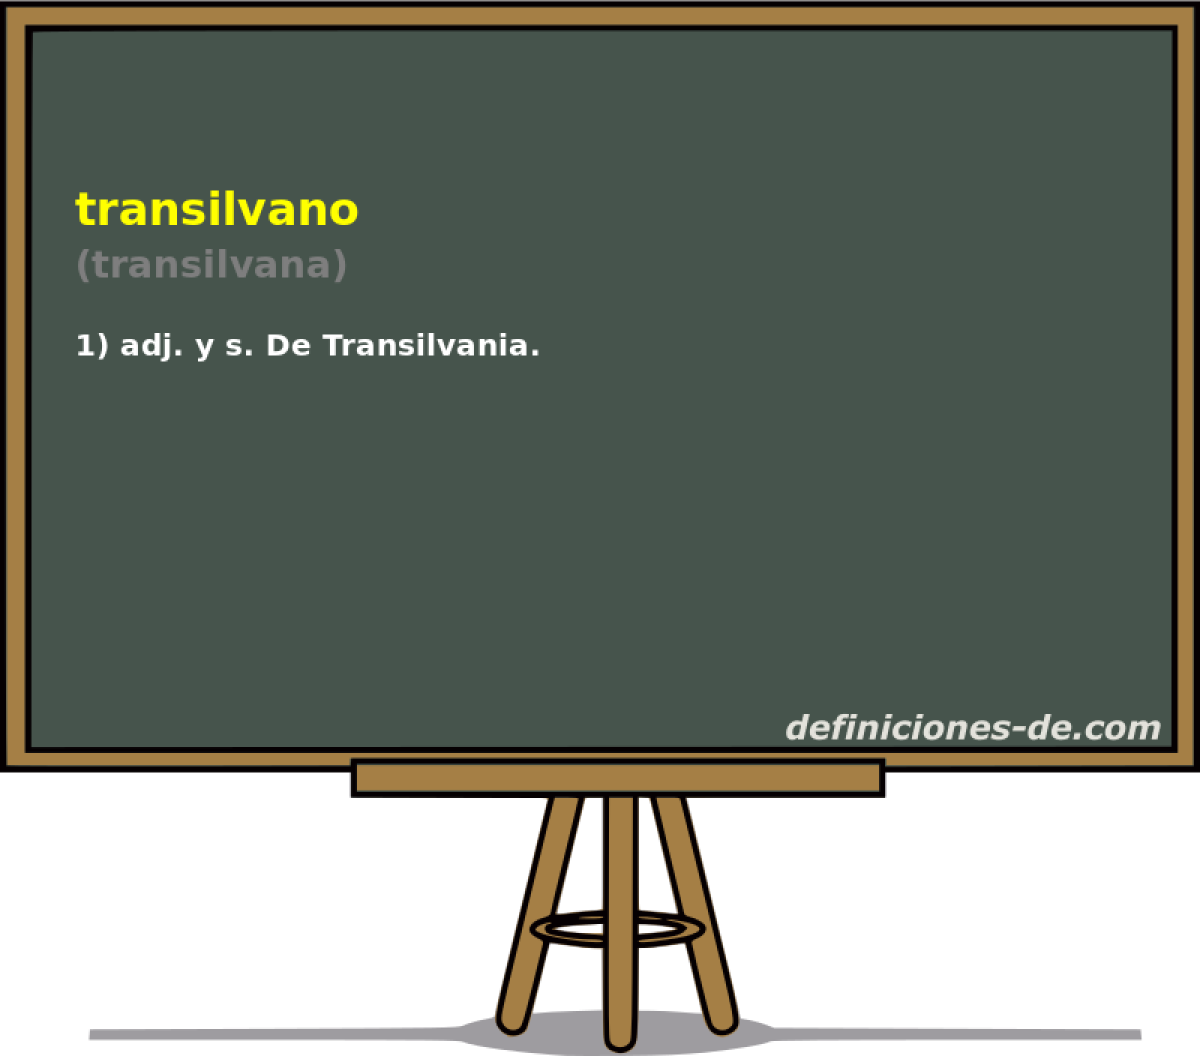 transilvano (transilvana)